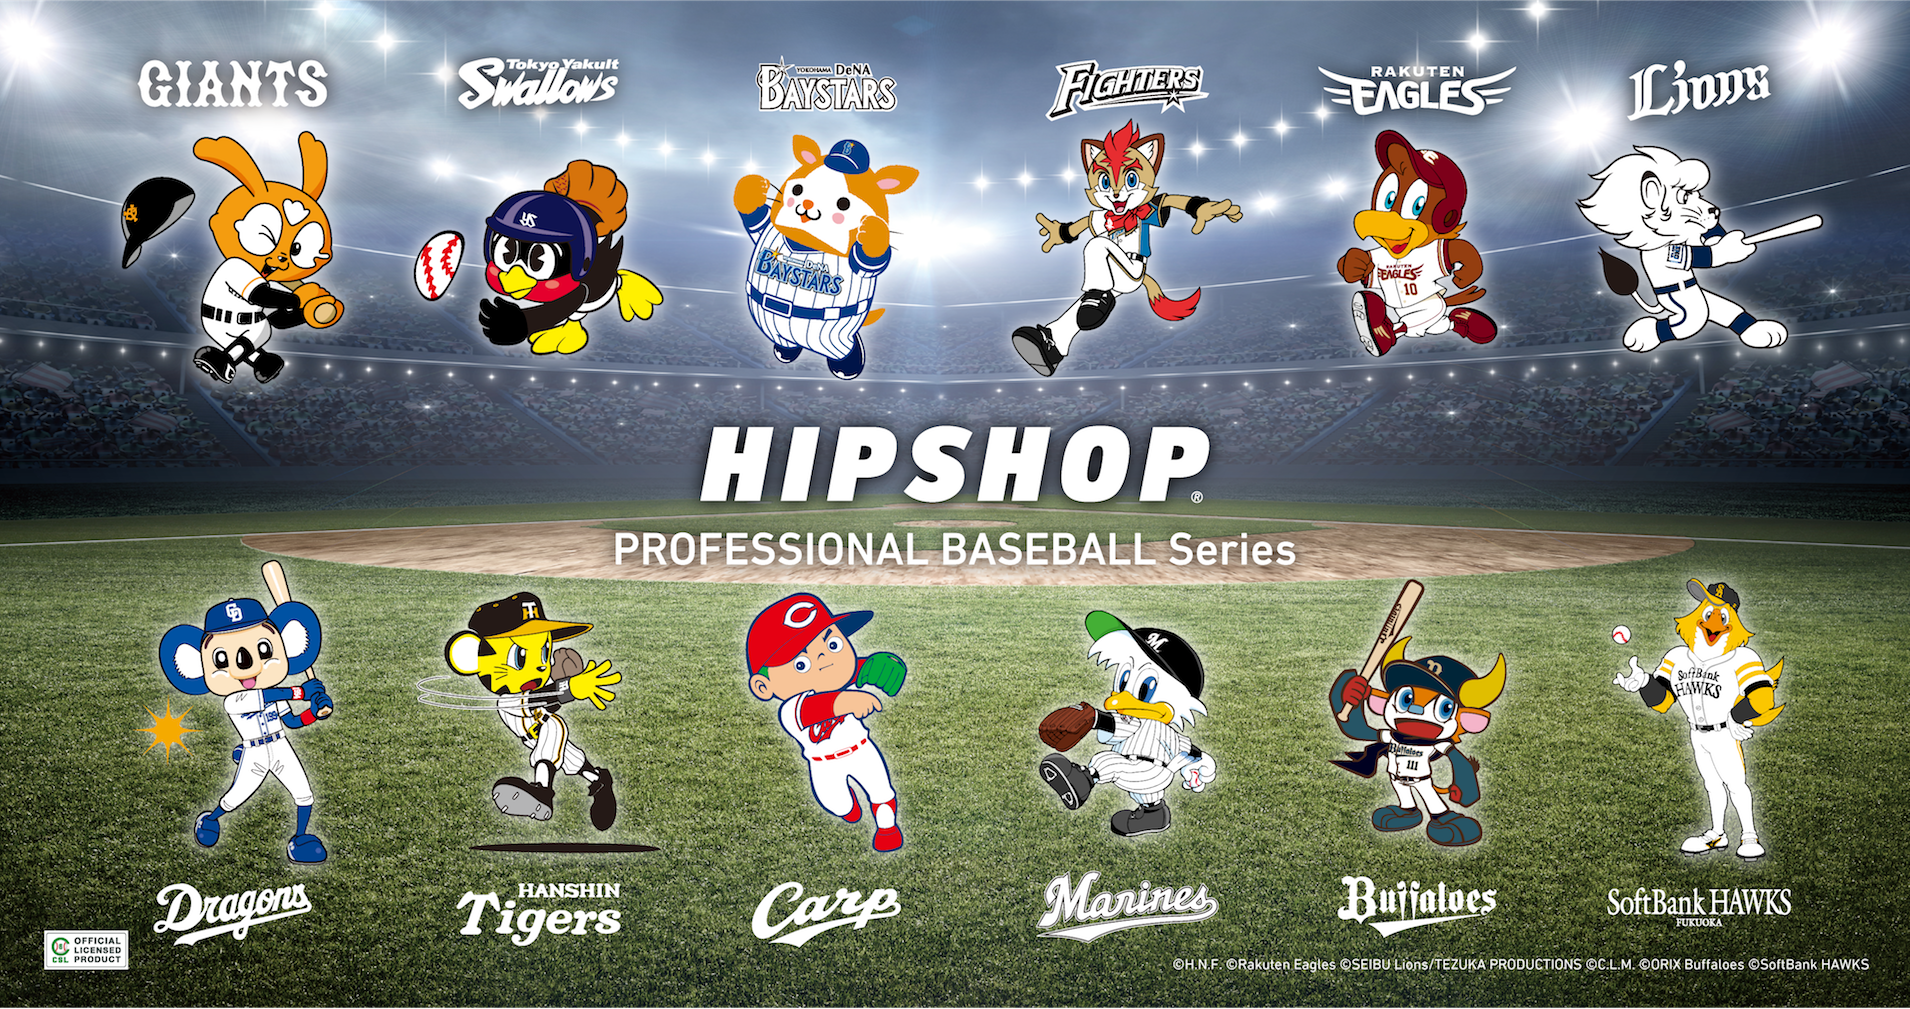 球春到来 21年プロ野球開幕 アンダーウェアブランド Hipshop ヒップショップ がプロ野球球団とコラボレーション 株式会社プロ ビジョンのプレスリリース